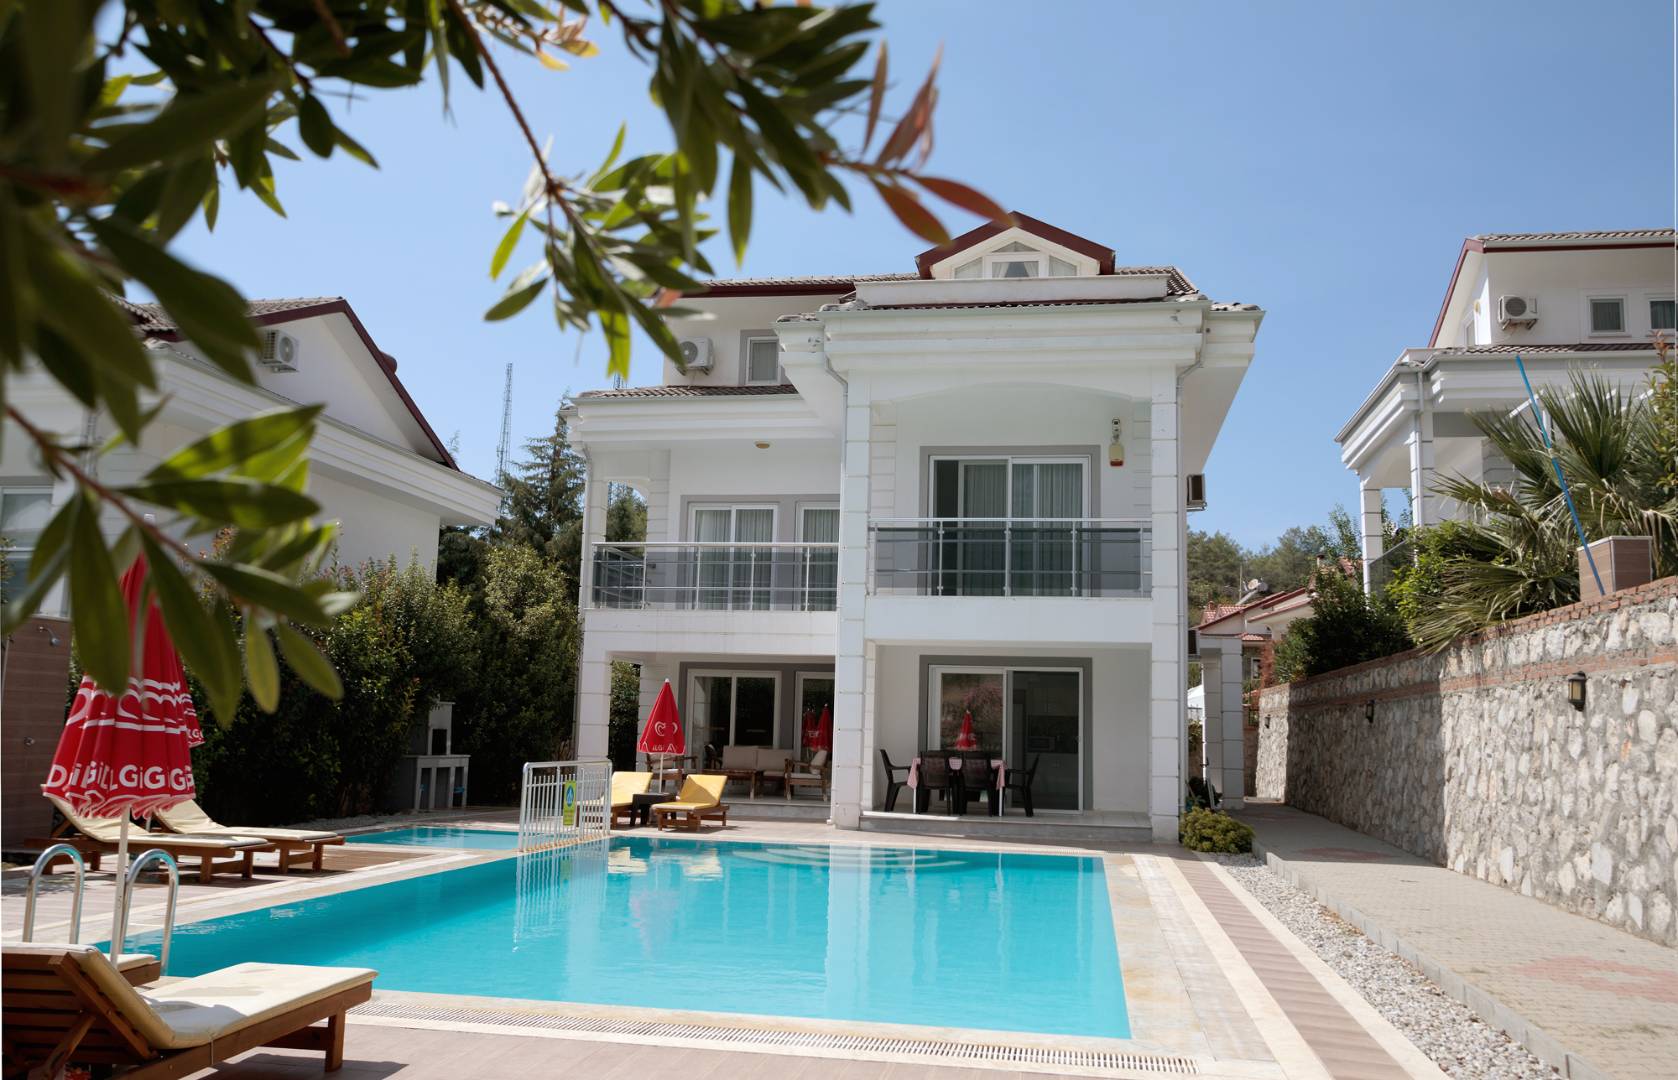 Fethiye Ovacık'ta Doğayla İç İçe, Özel Havuzlu, Modern Tasarımlı Villa